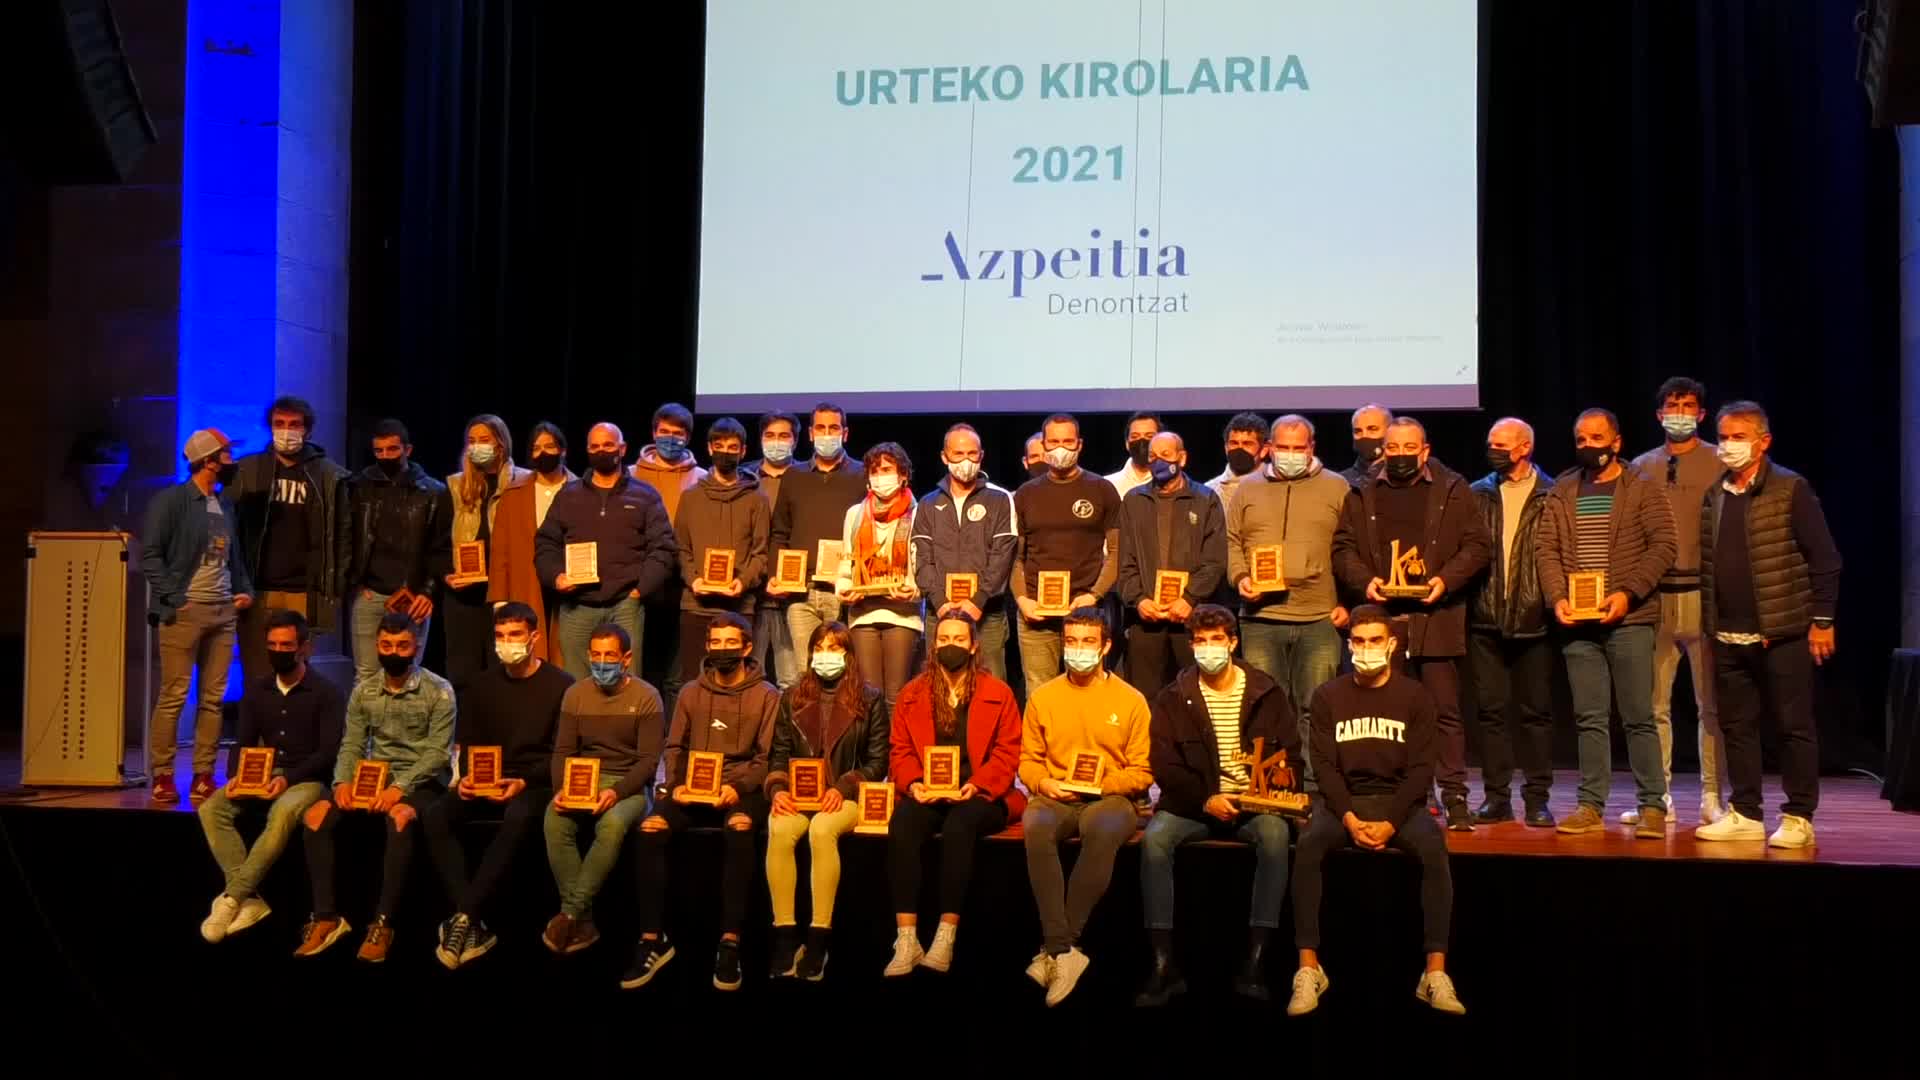 Alaia Juaristik, Juaristi ISB taldeak eta Xanti Merinok jaso dute  2021 urteko Kirolaria saria